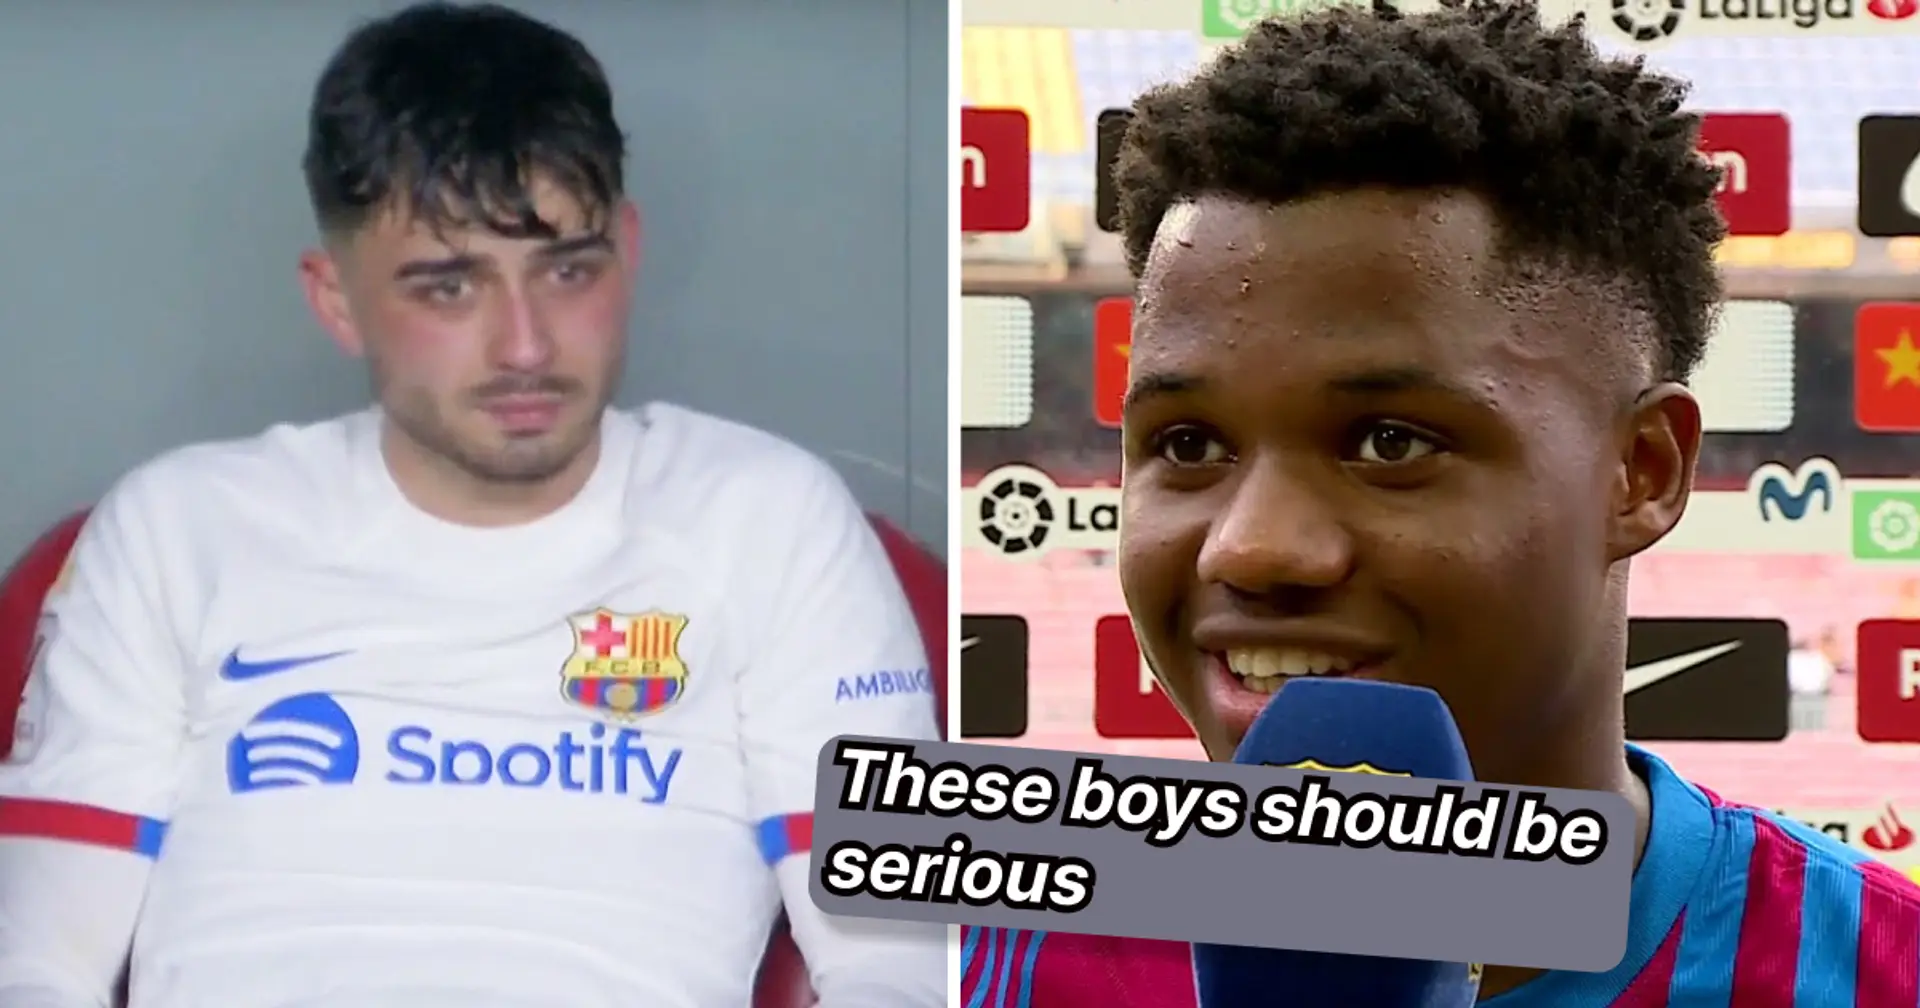 "Il va risquer sa carrière": les fans du Barça envoient un avertissement fort à Pedri concernant la décision sur sa blessure